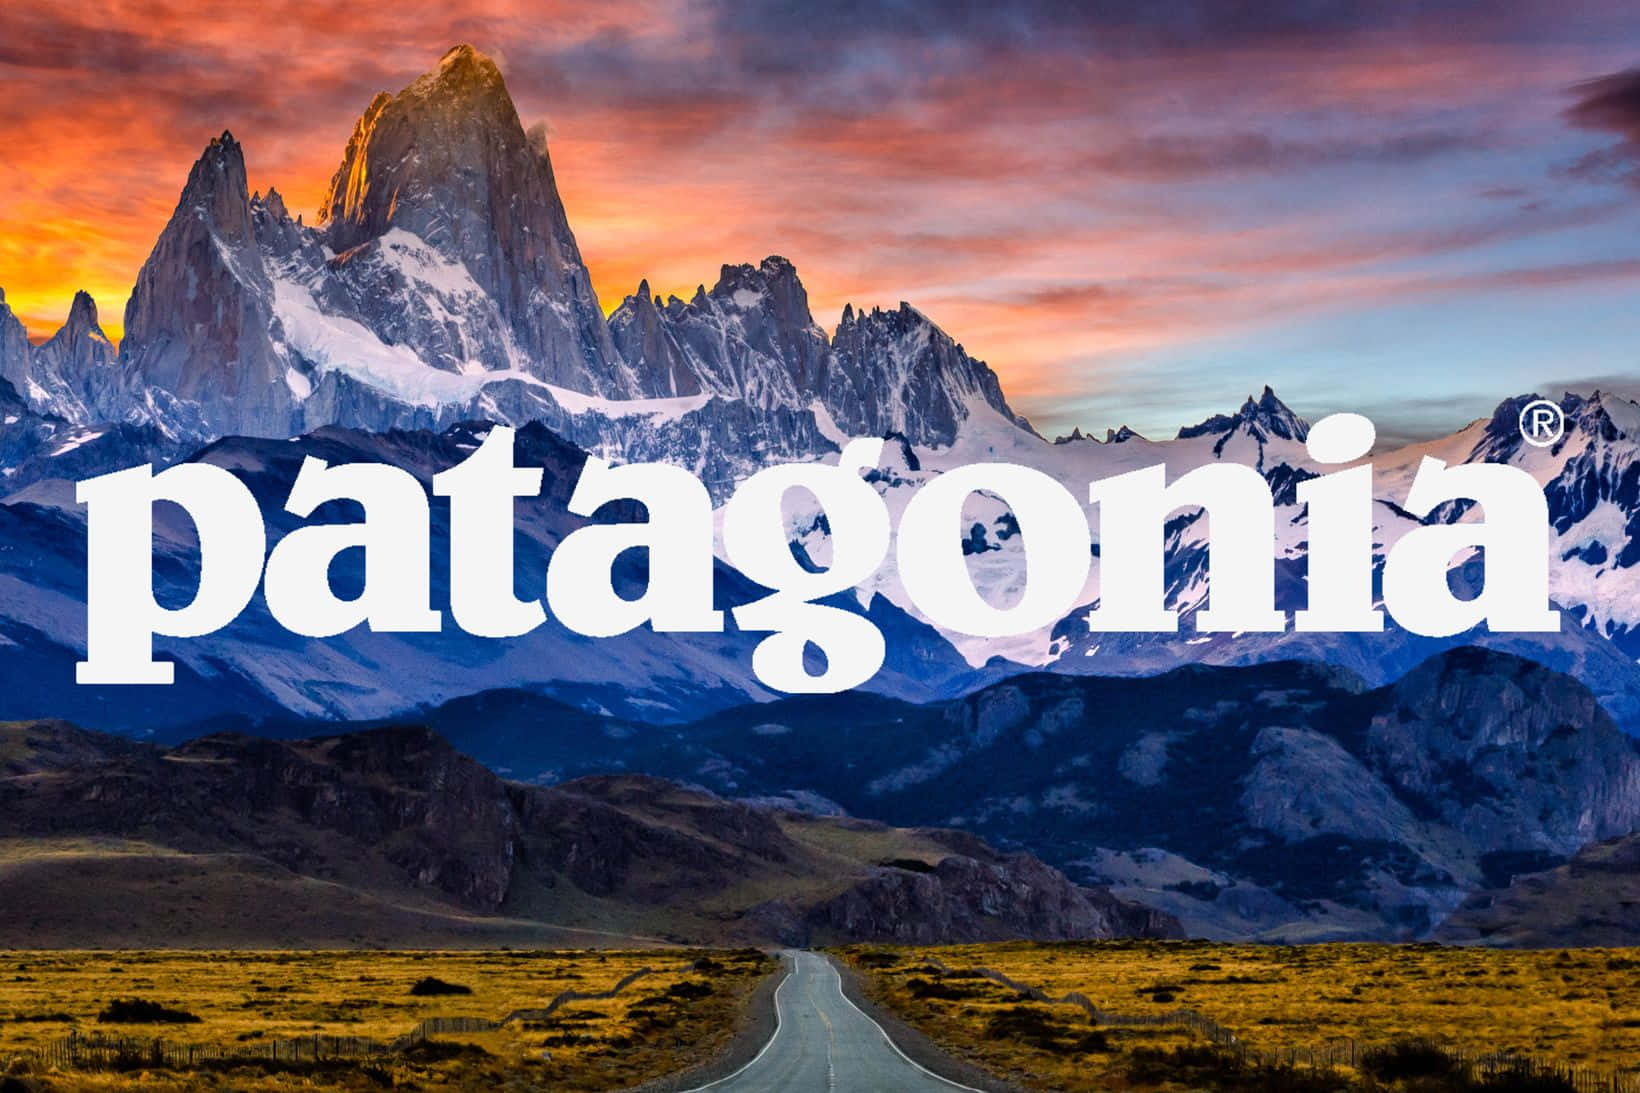 Coloresvibrantes Iluminando Las Imponentes Montañas De La Patagonia.